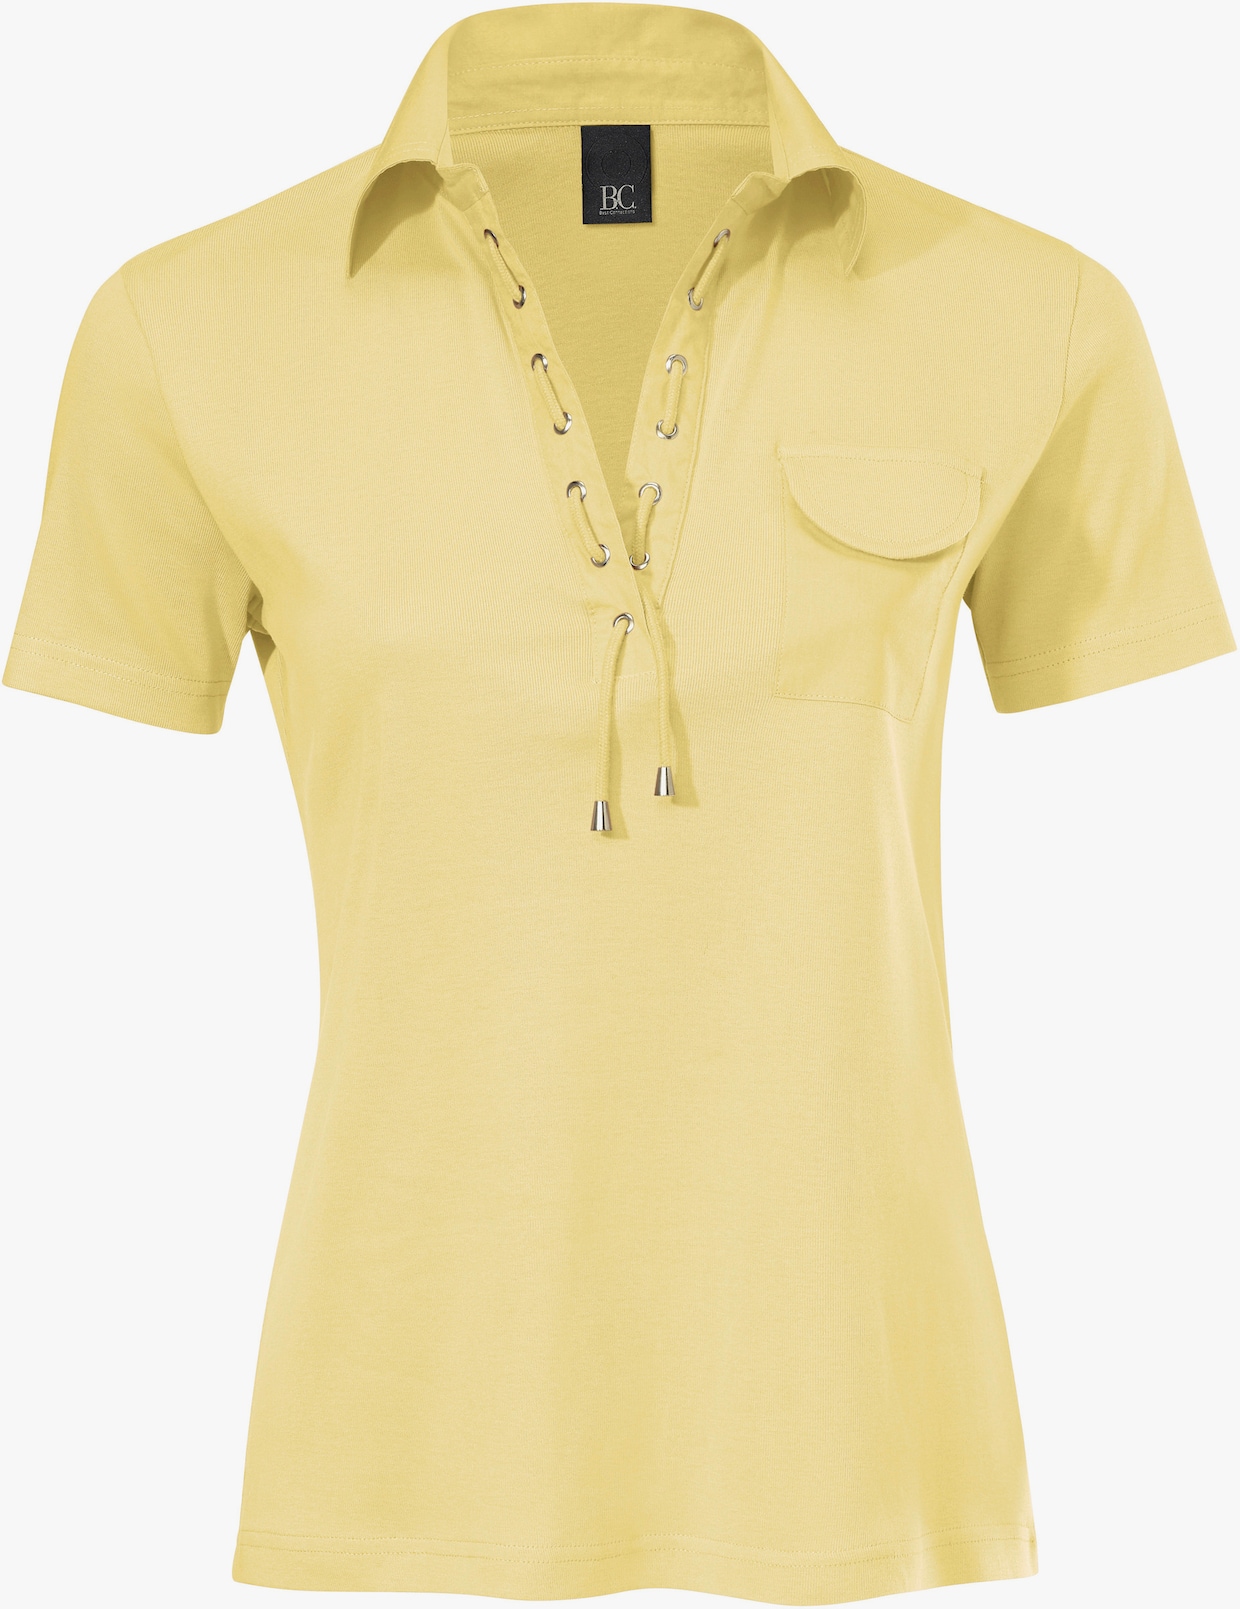 heine Poloshirt - gelb